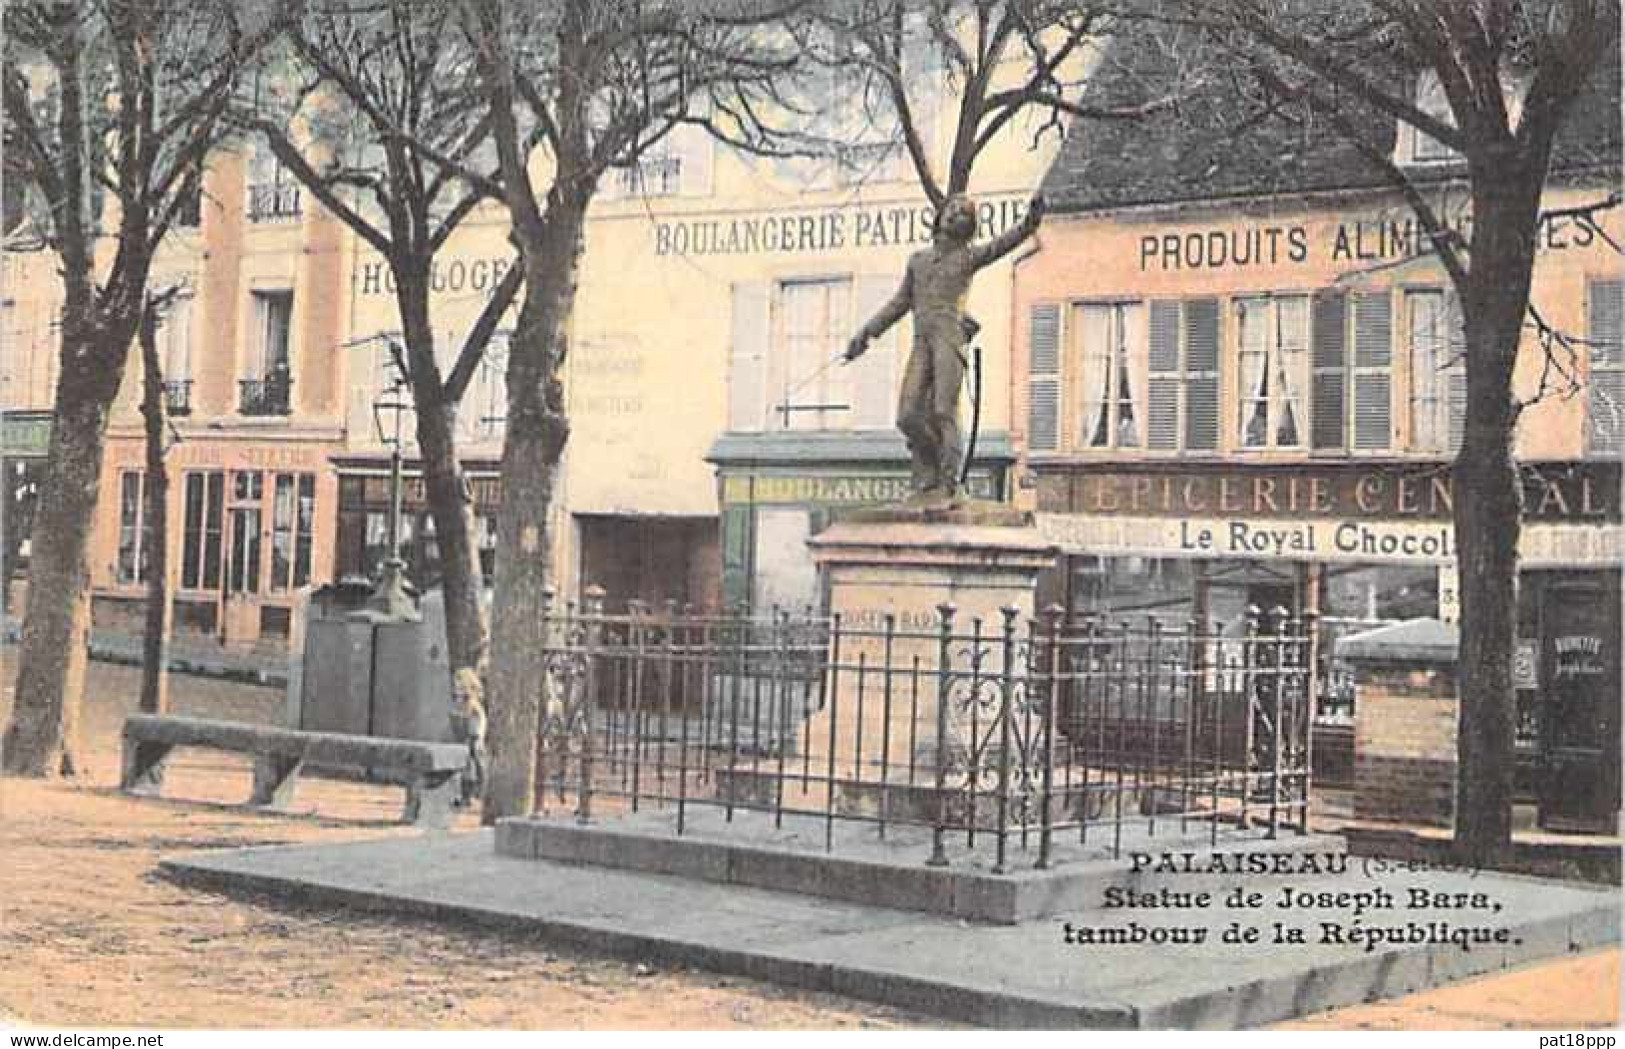 FRANCE - Lot de 40 Cartes de MONUMENTS ( Célebrités & Fontaines Monumentales ) 2 CPA + 9 CPSM GF + 6 CPM GF + 7 offertes